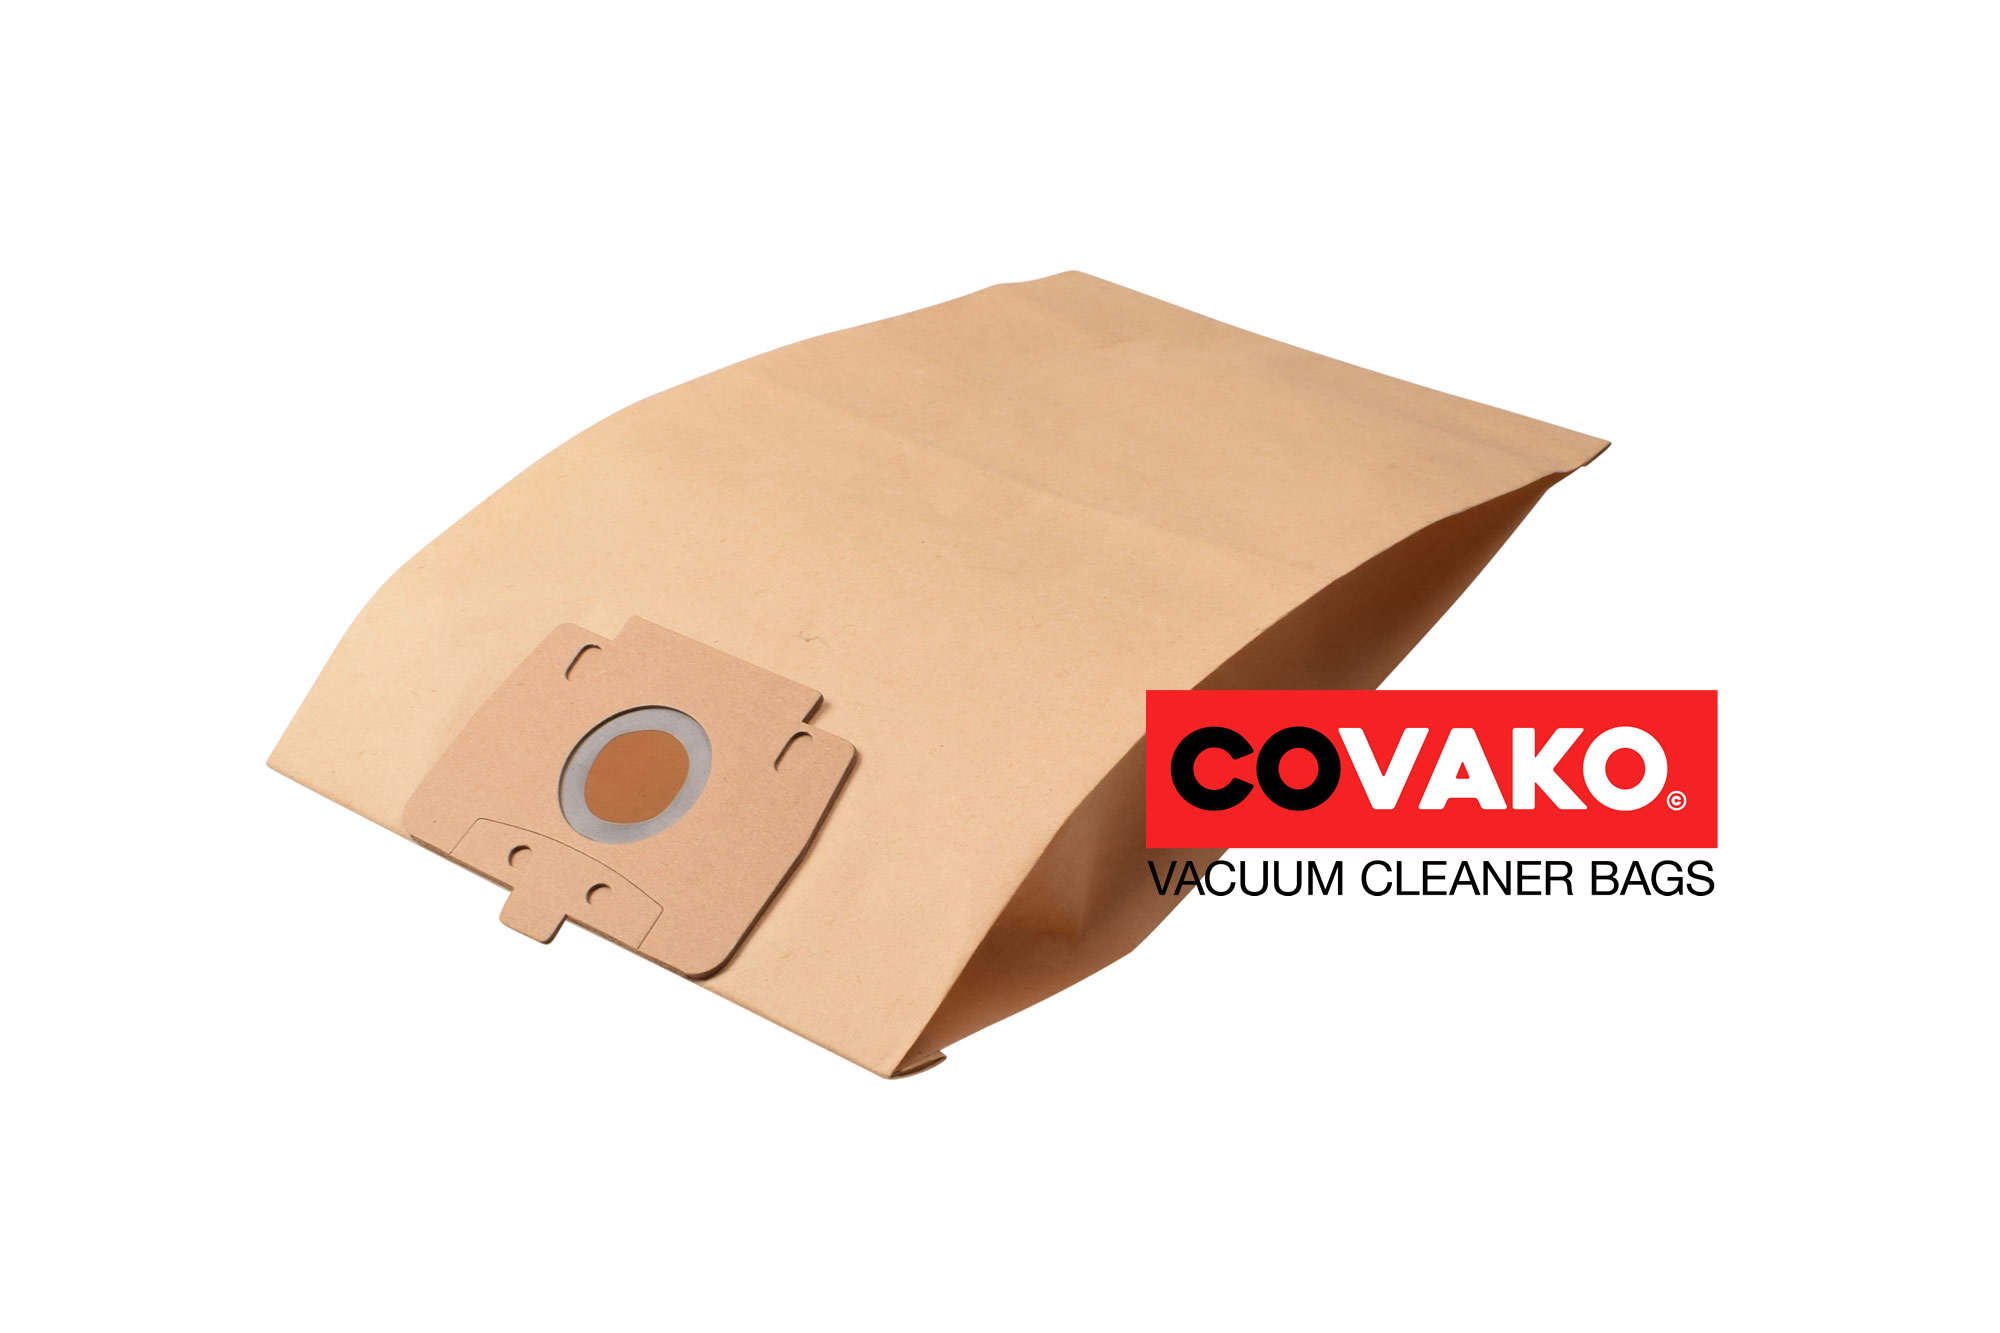 Columbus M 158 / Paper - Columbus vacuum cleaner bags